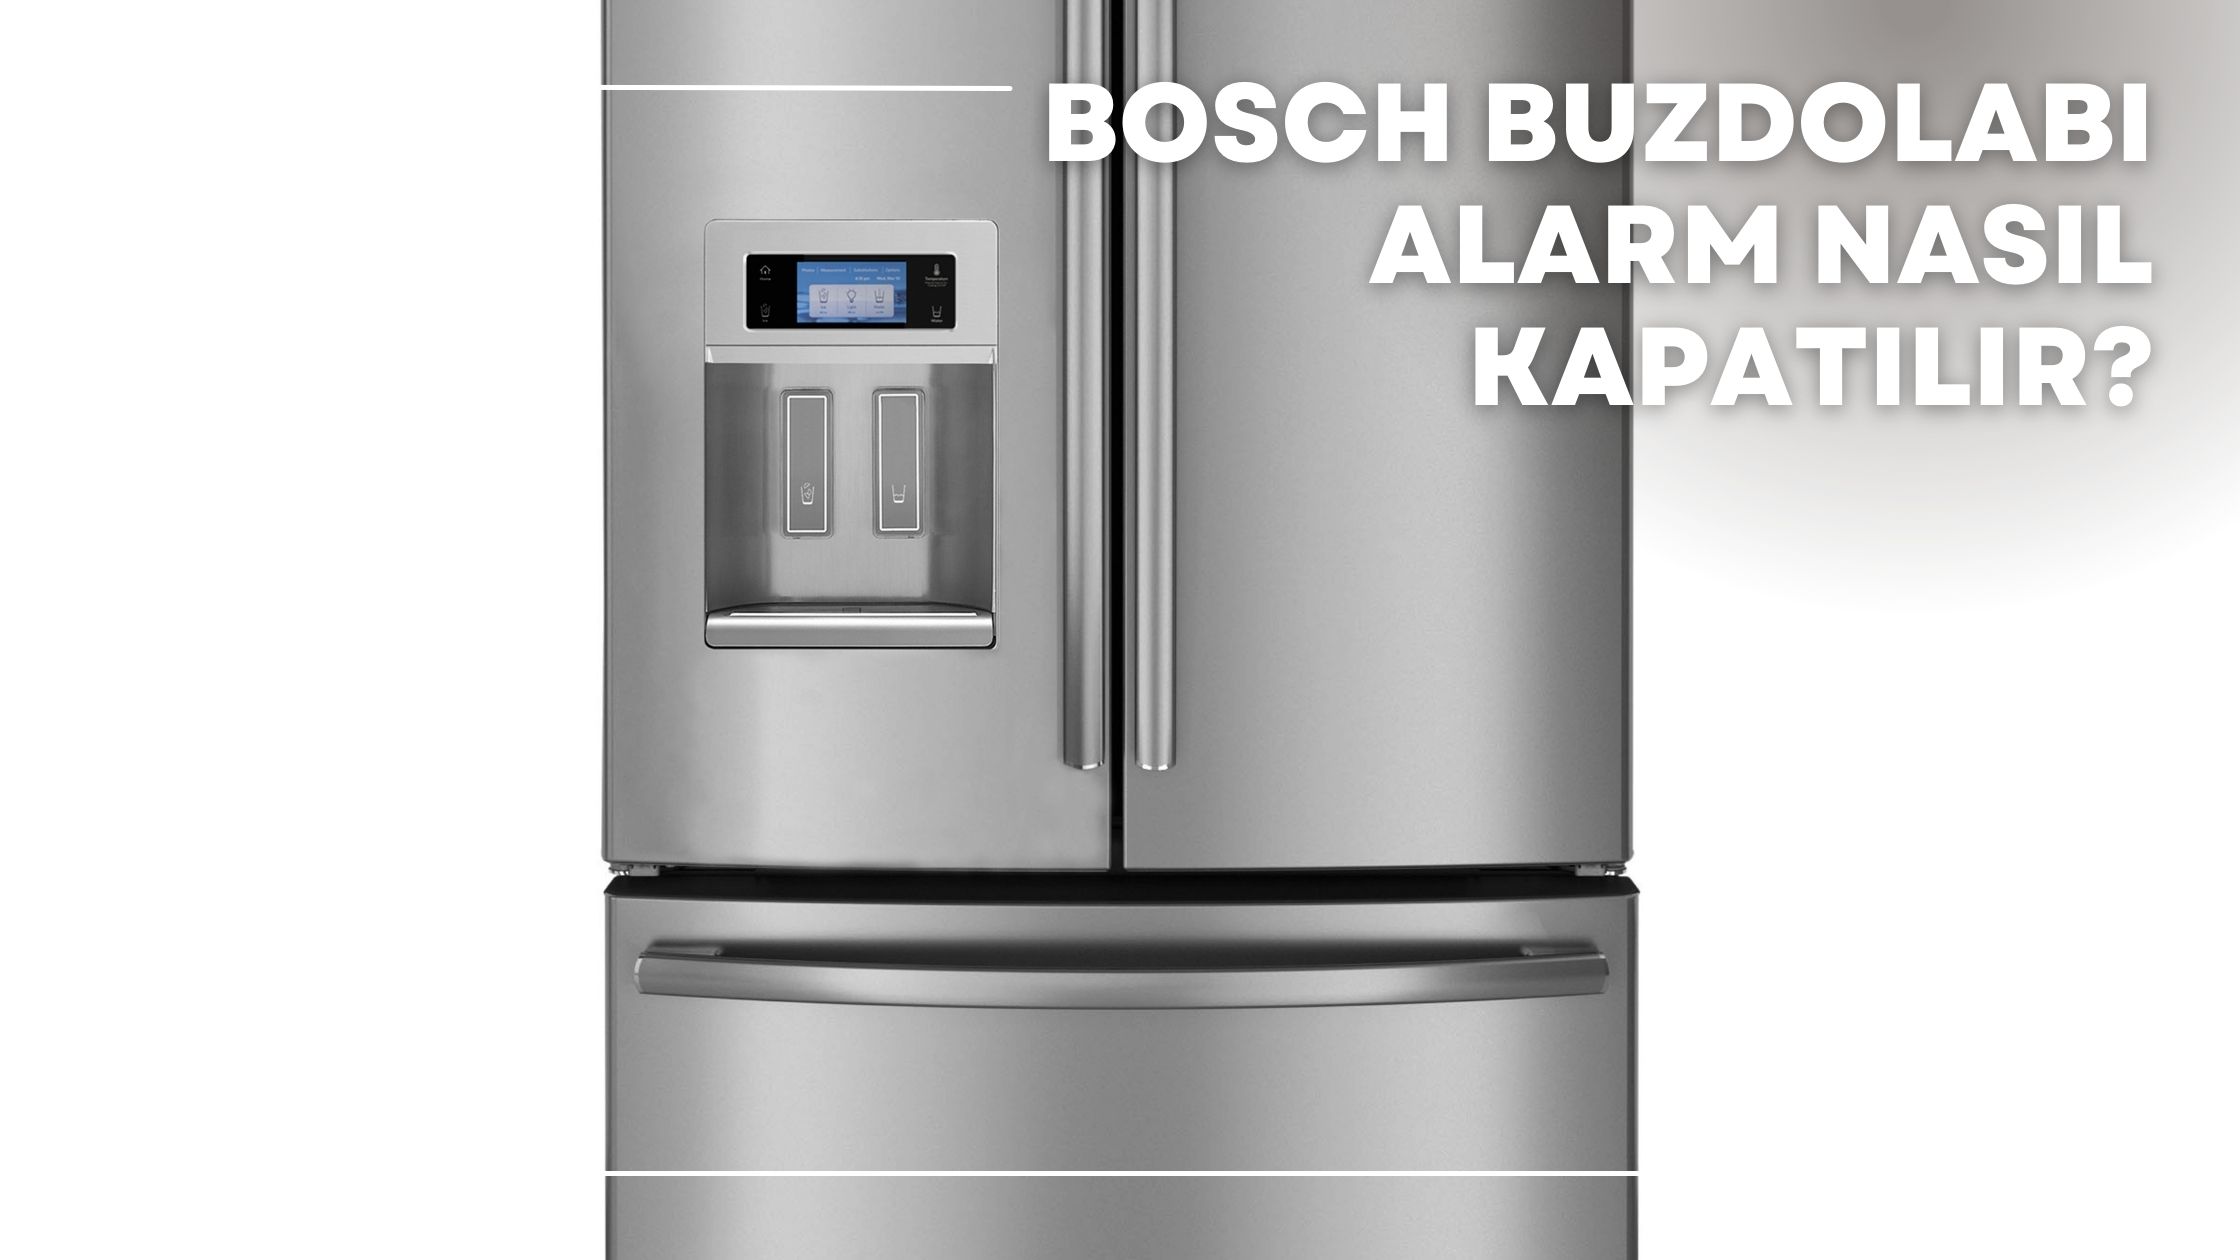 Bosch Buzdolabı Alarm Nasıl Kapatılır?